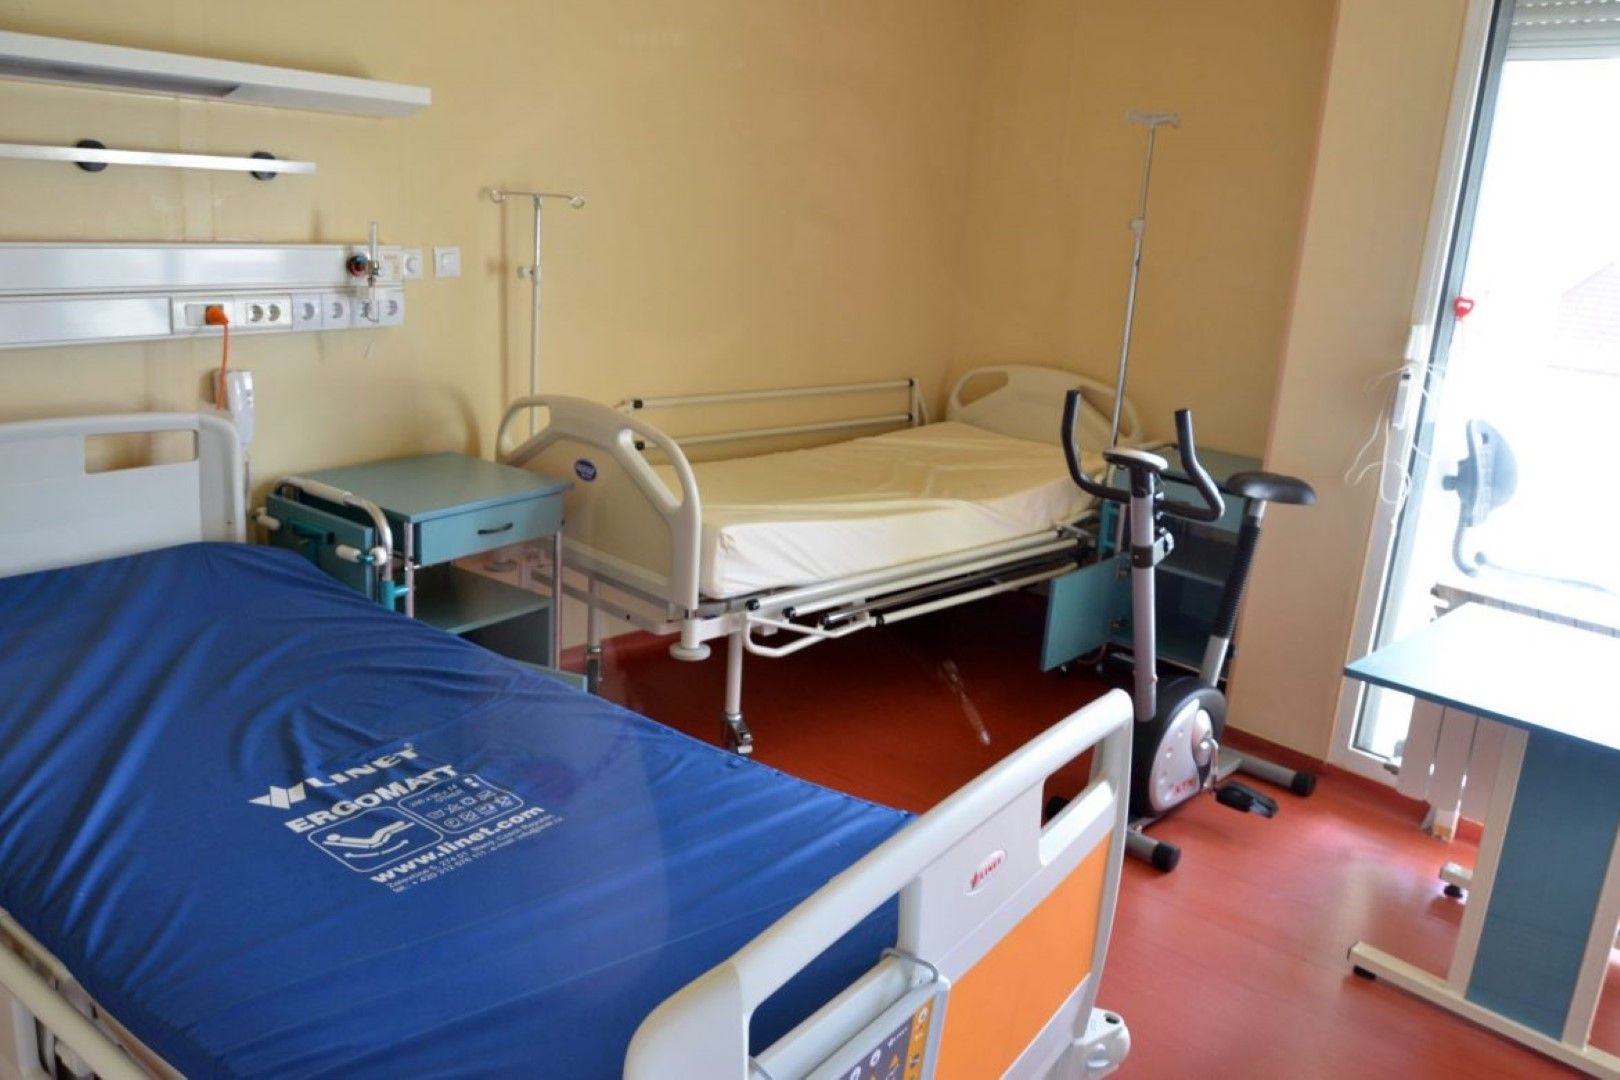 Близки на починали пациенти твърдят, че хигиената в болницата е лоша